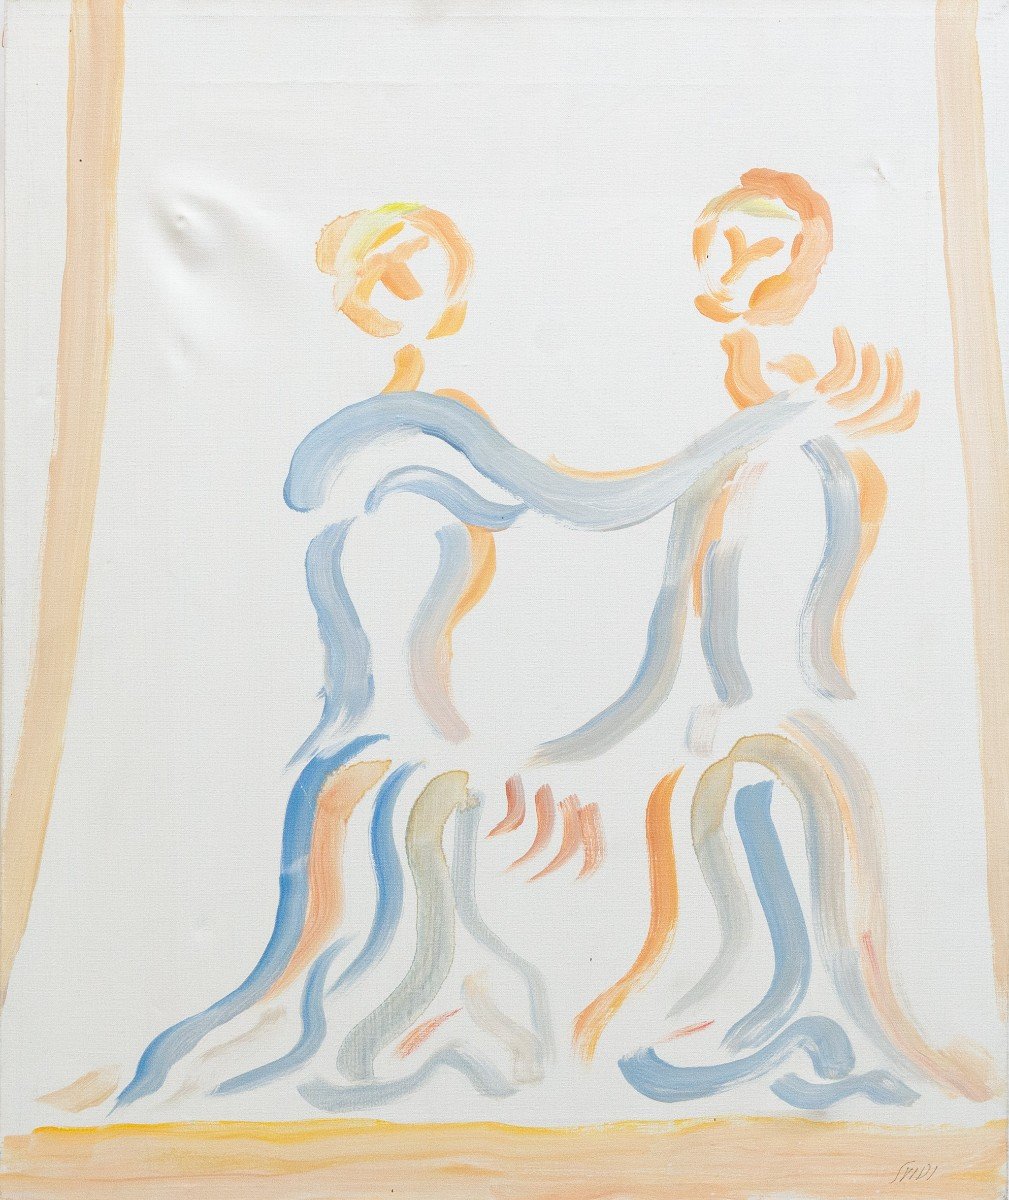  Huile sur toile, "Incontro", par Virgilio Guidi, années 1960